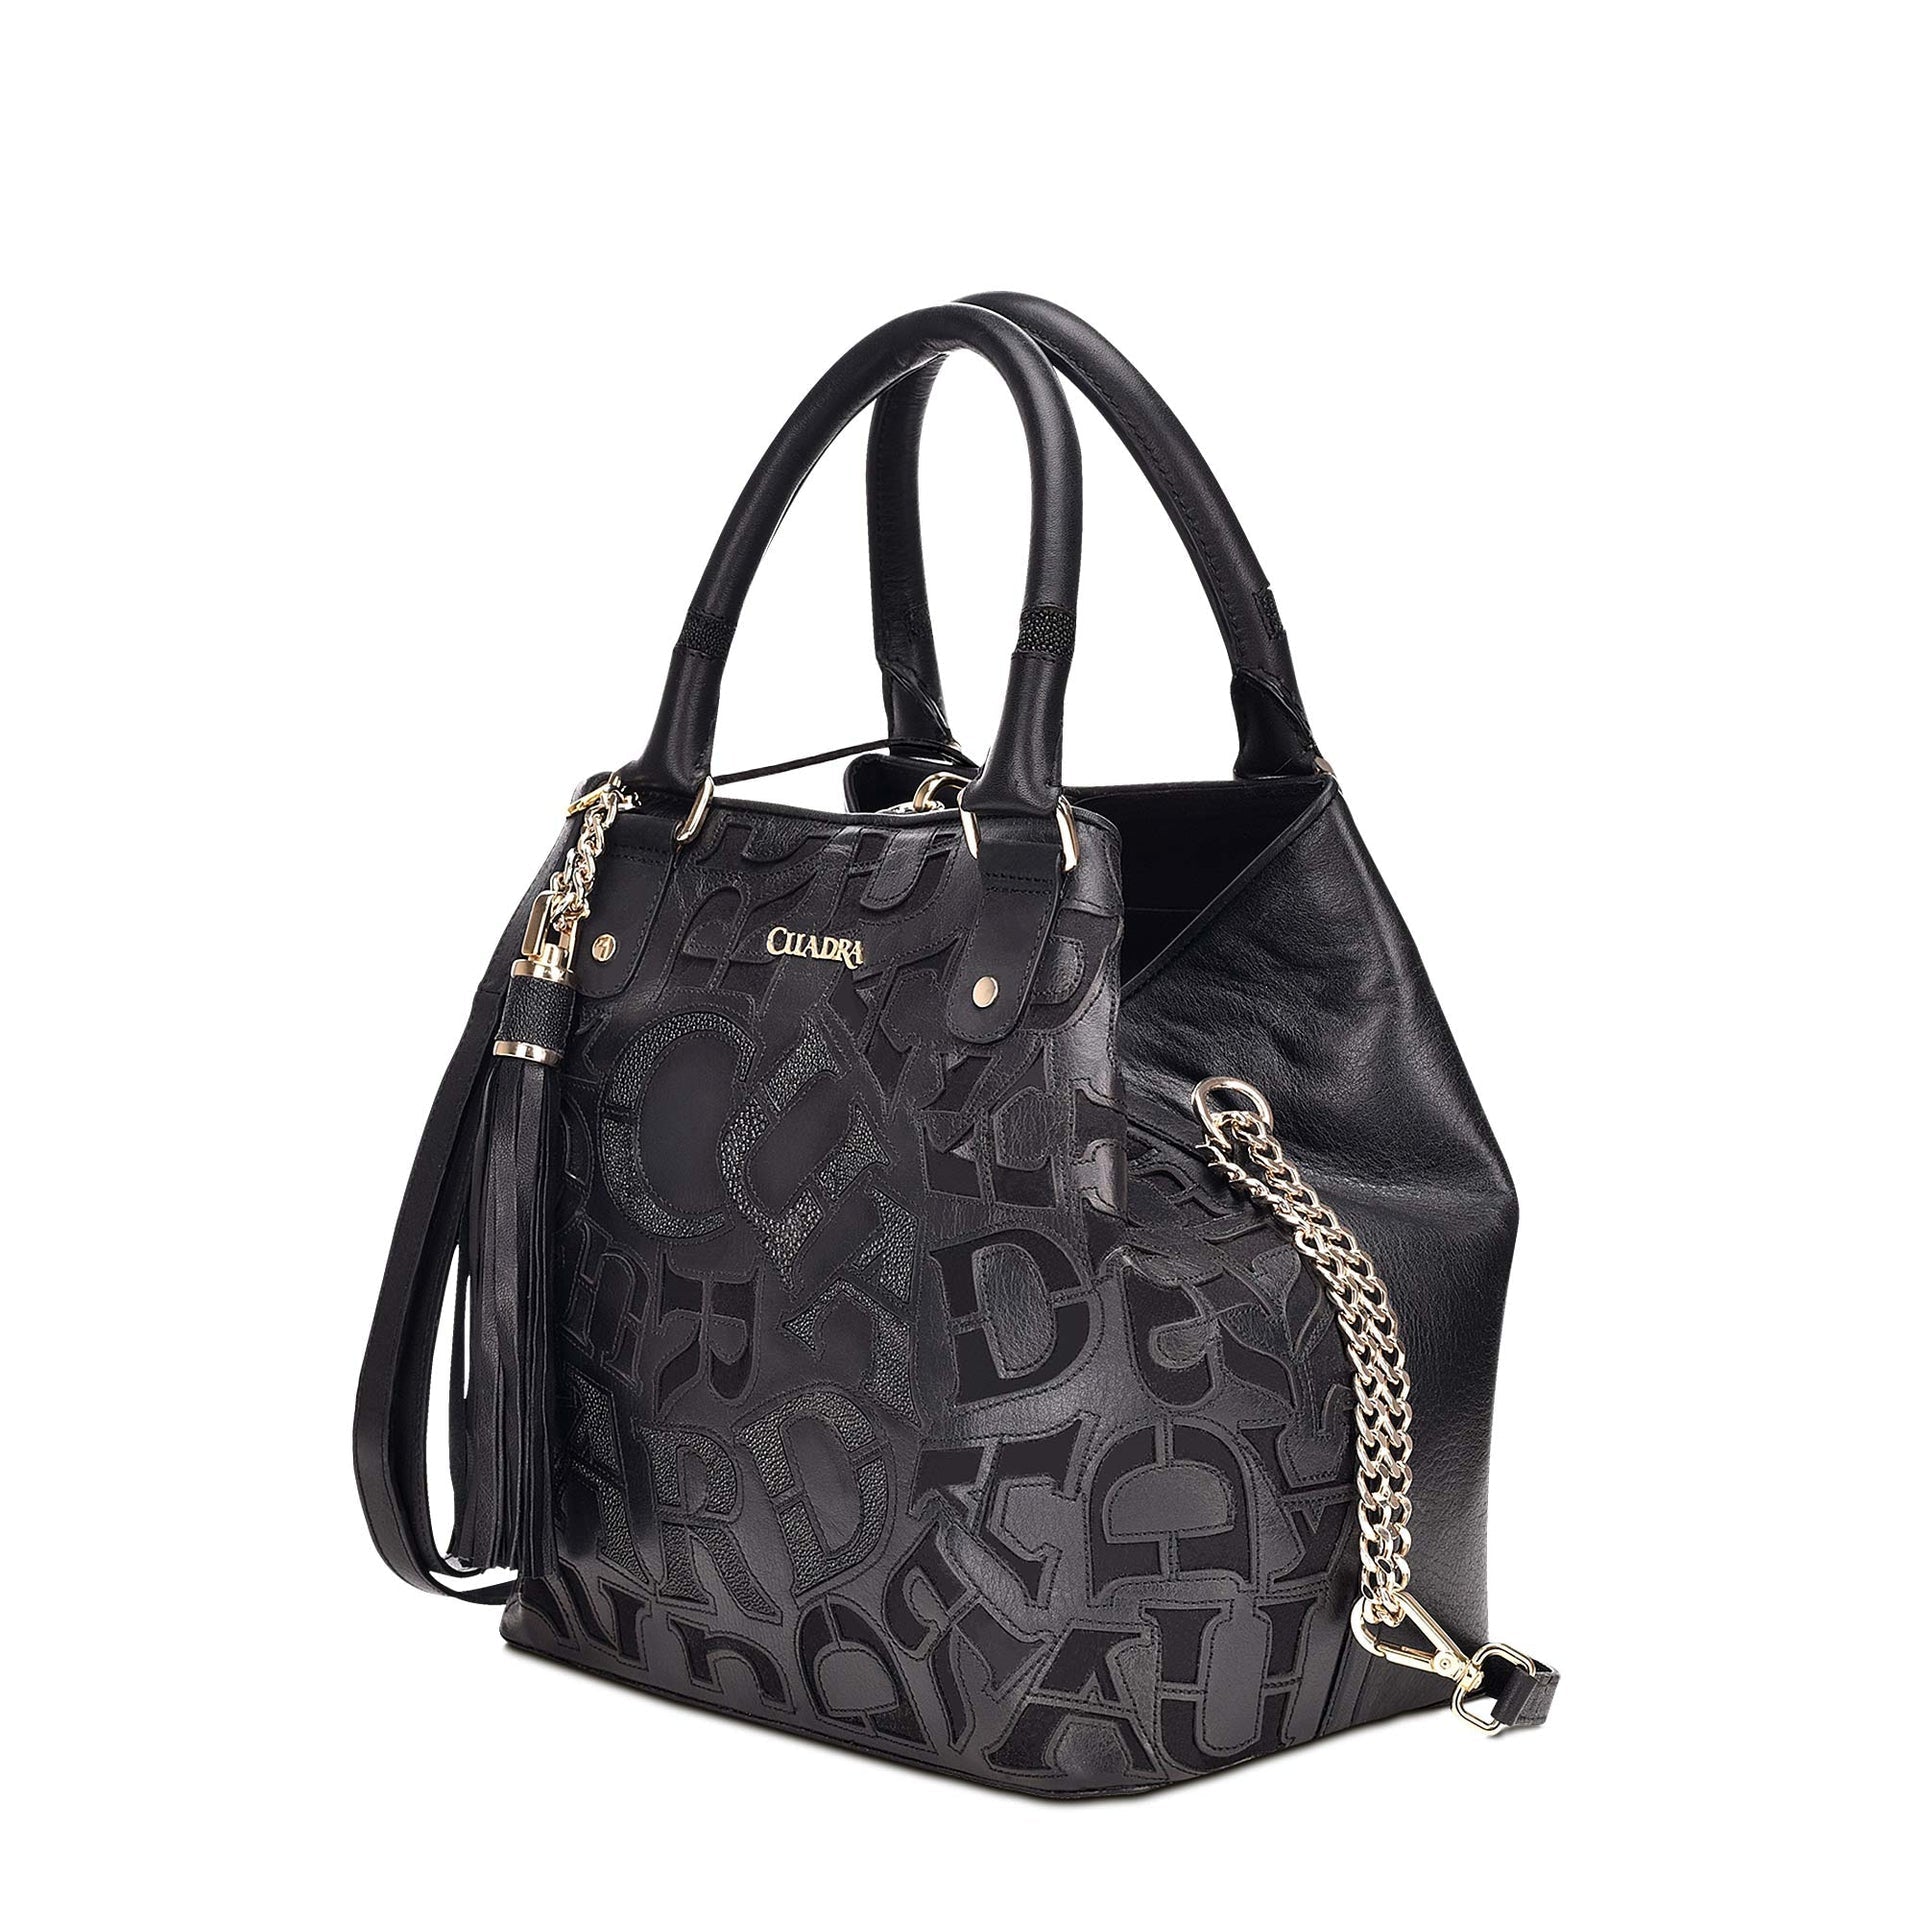 BO399MA - Cuadra black fashion leather folding canvas tote bag for women-CUADRA-Kuet-Cuadra-Boots